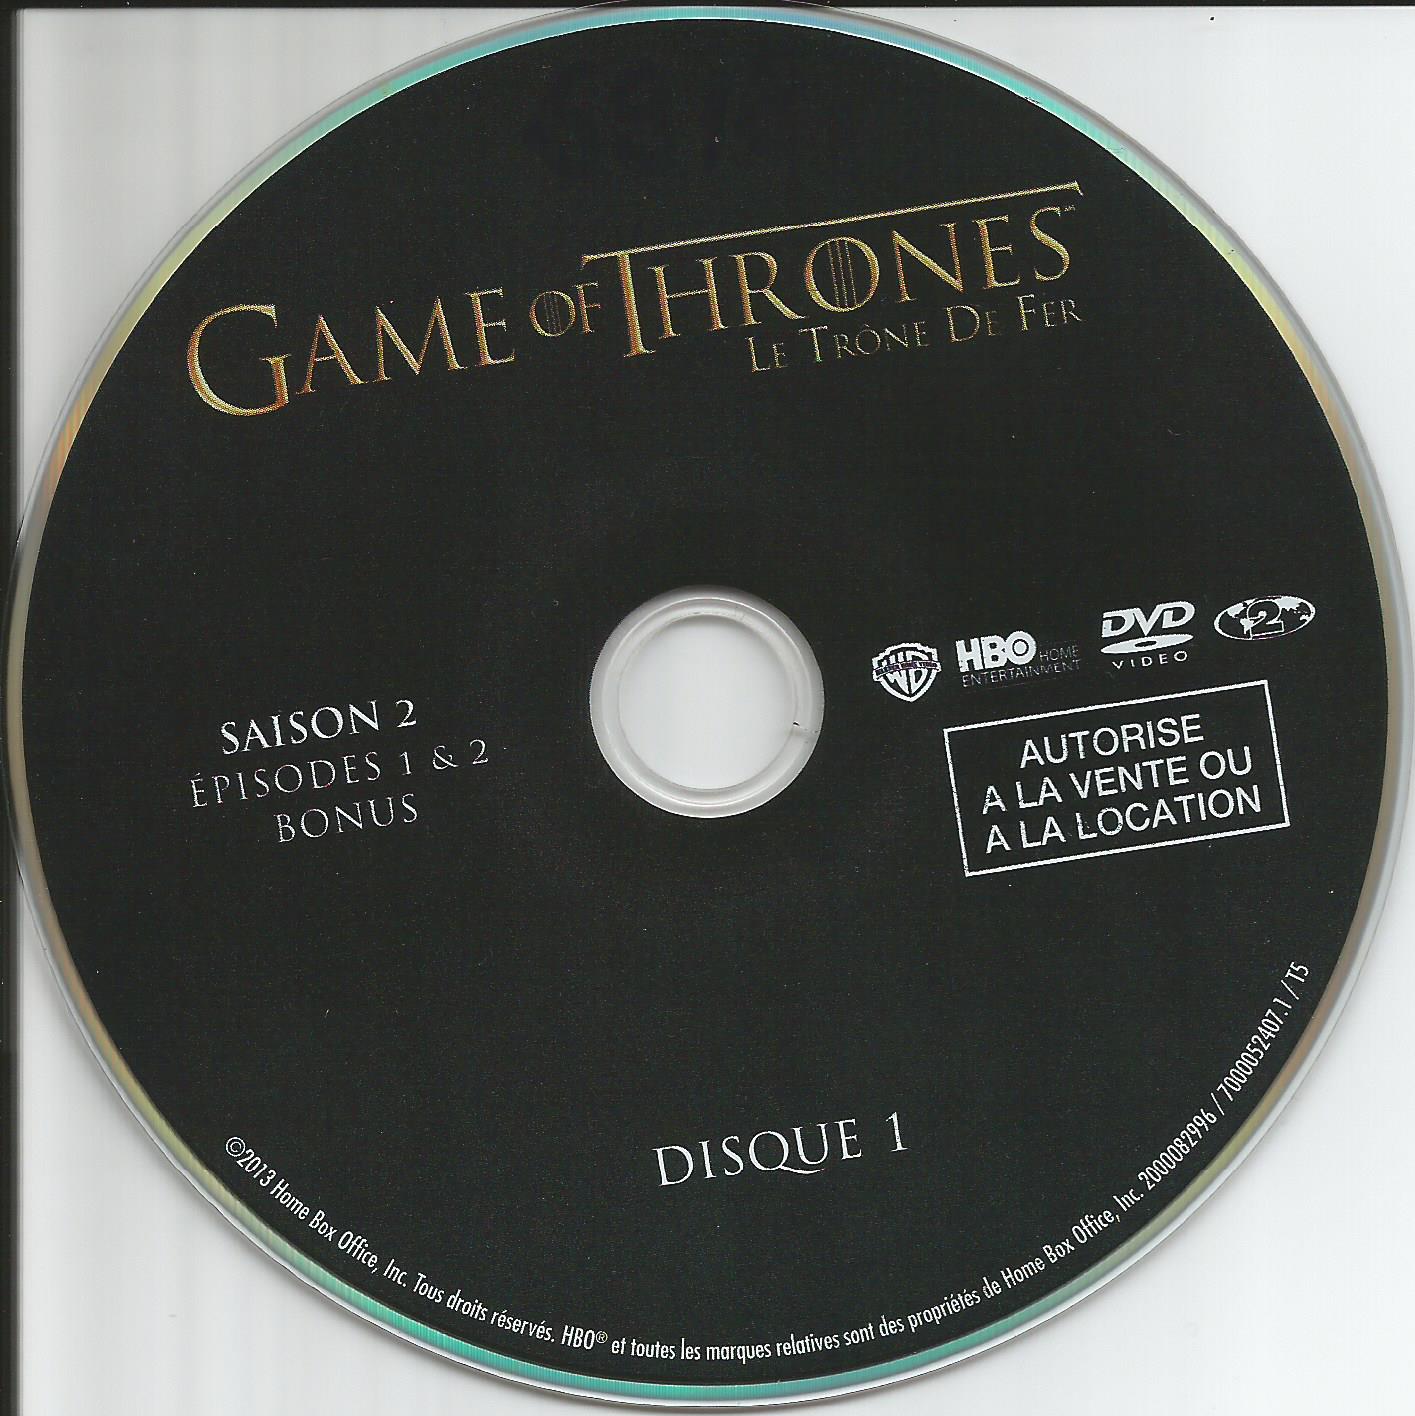 Game of thrones (le trone de fer) Saison 2 DVD 1